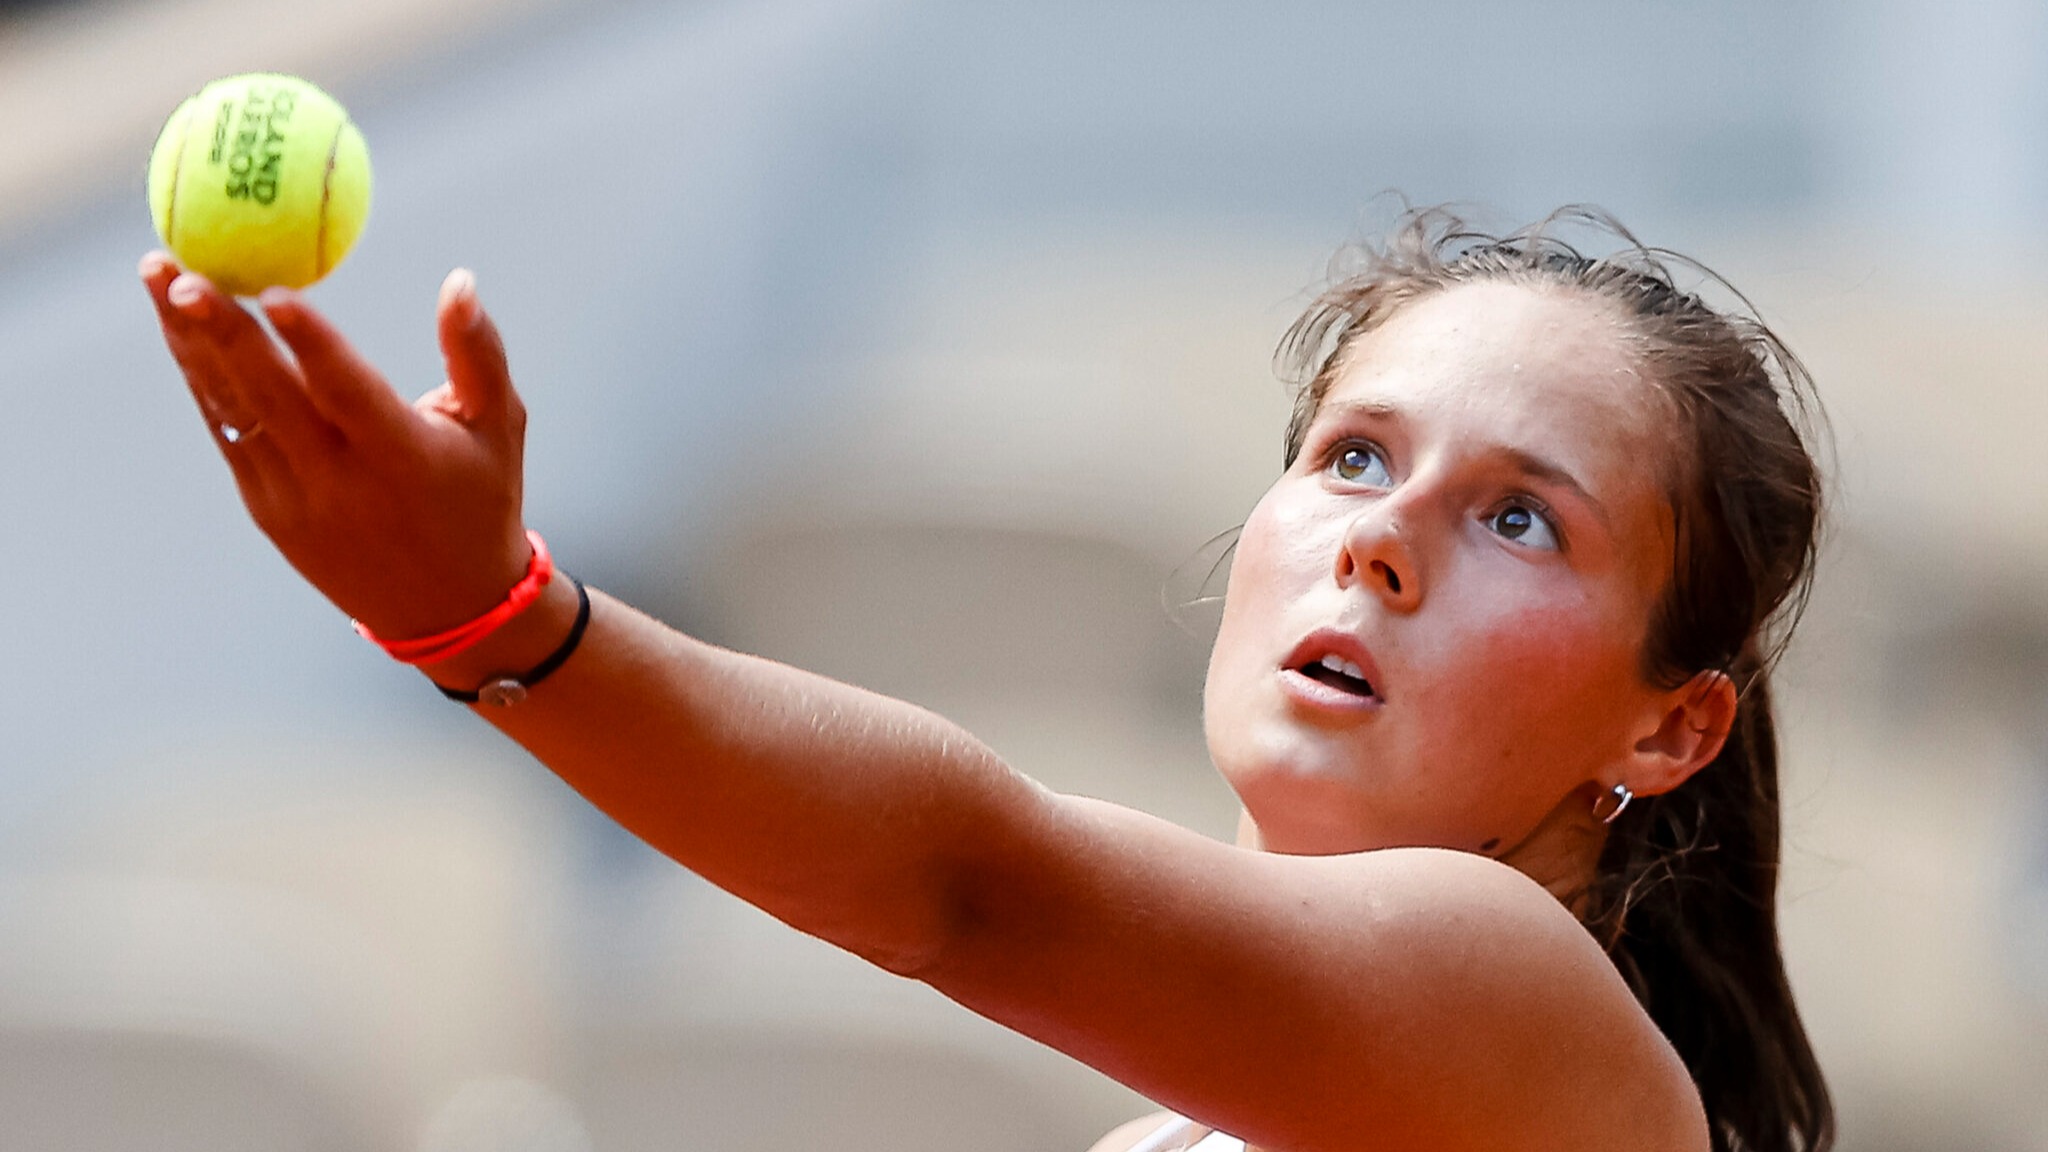 Касаткина сохранила восьмую позицию в обновлённом рейтинге WTA